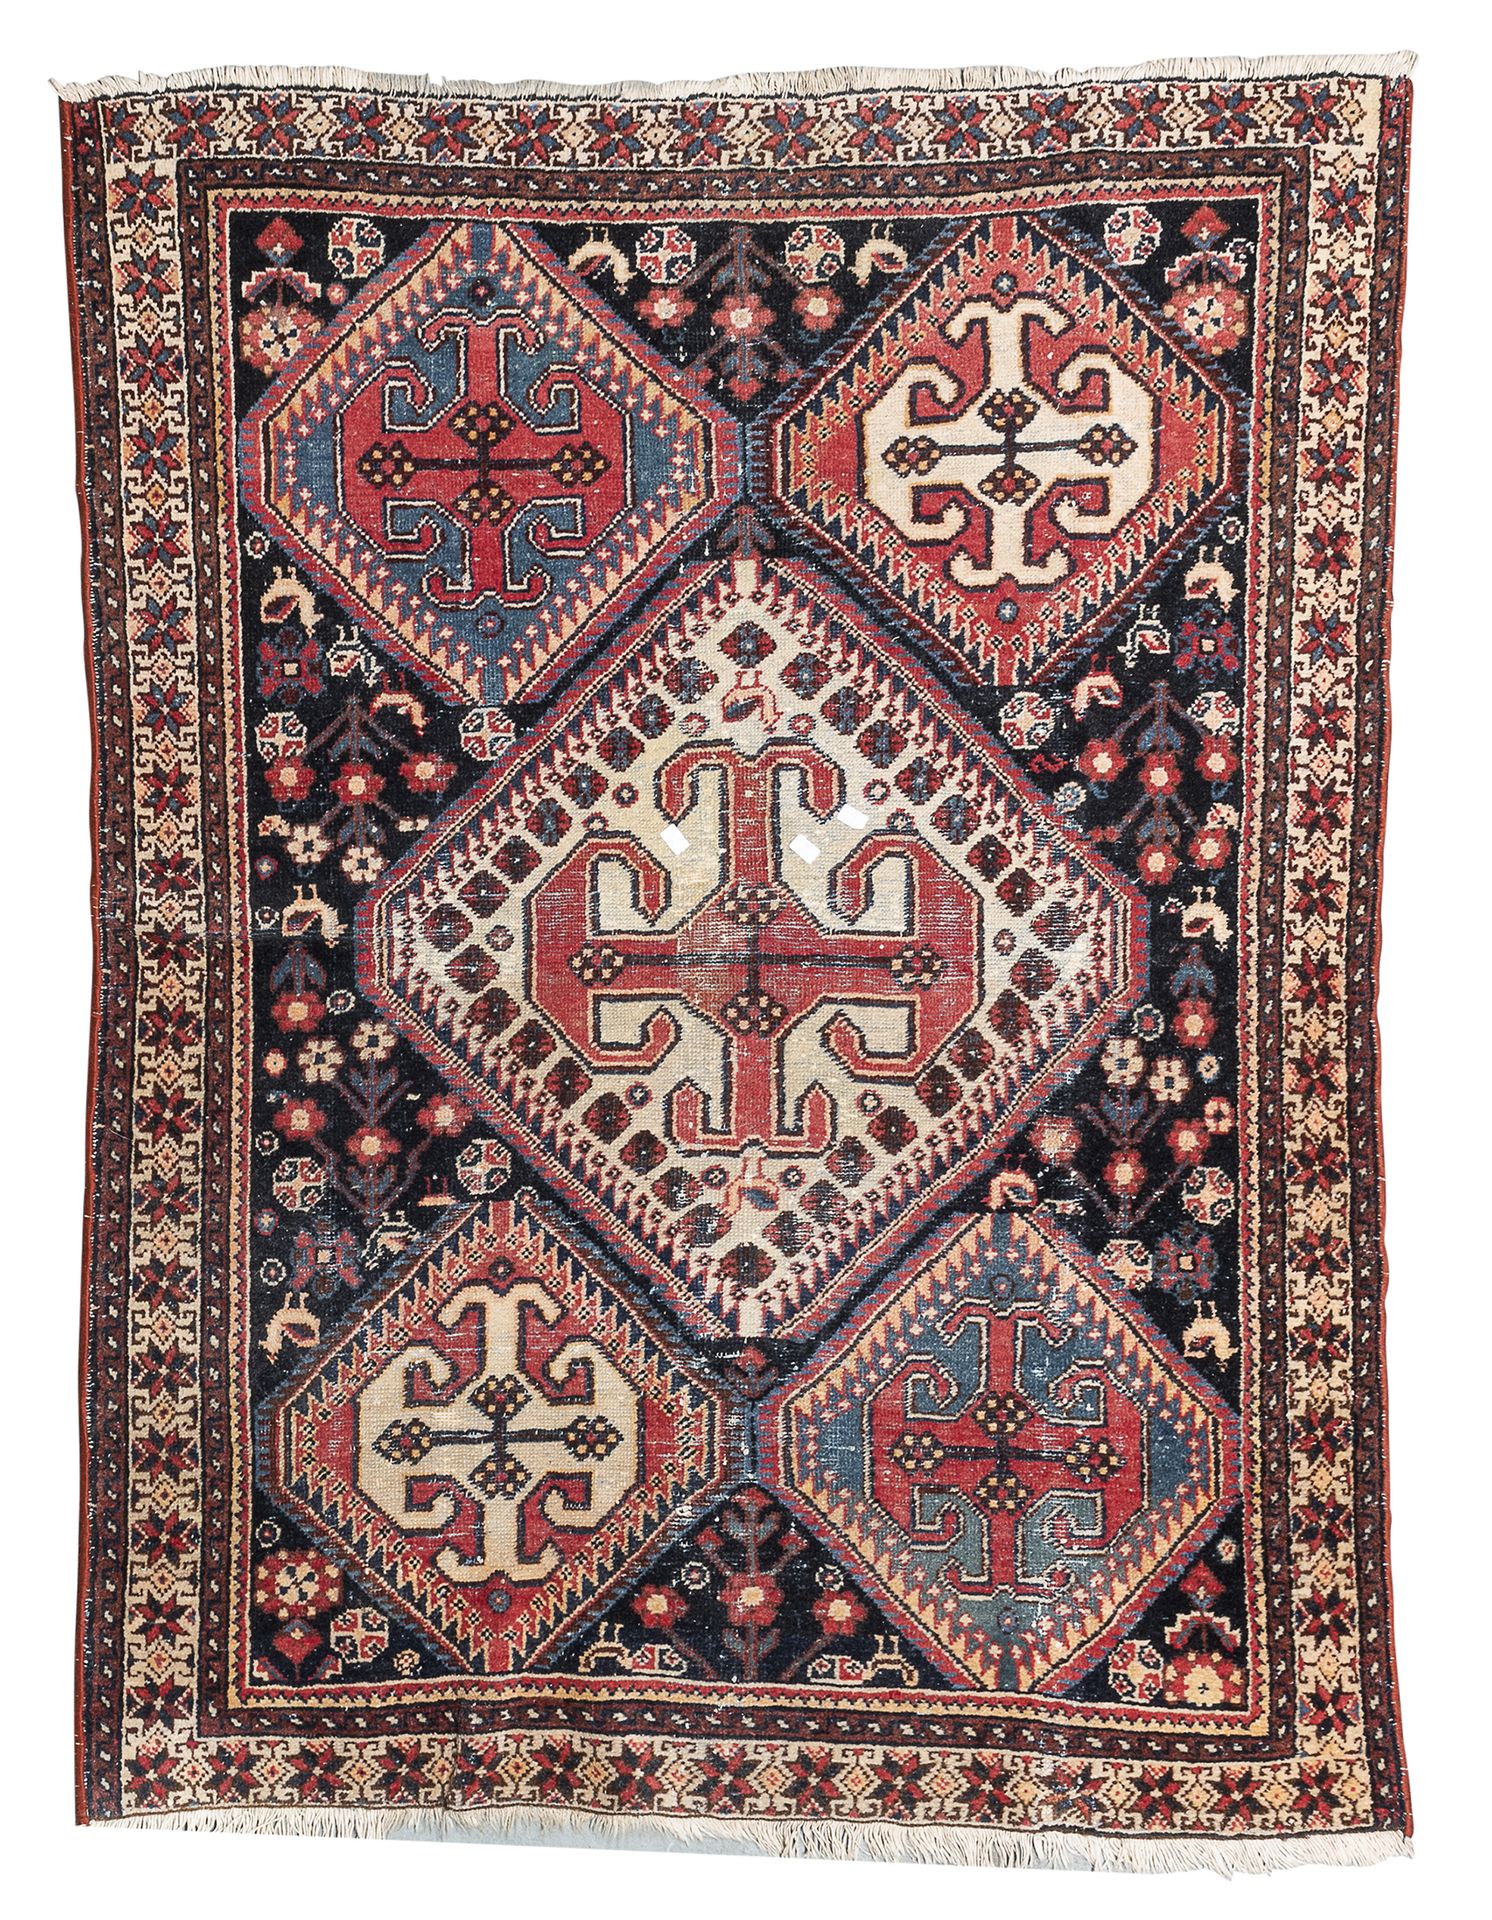 Null 高加索的Ciondzoresk地毯，20世纪初

有五个阶梯状的菱形奖章，中央区域有玫瑰花、花和动物的次要图案，背景为蓝色。

尺寸为170 x 13&hellip;